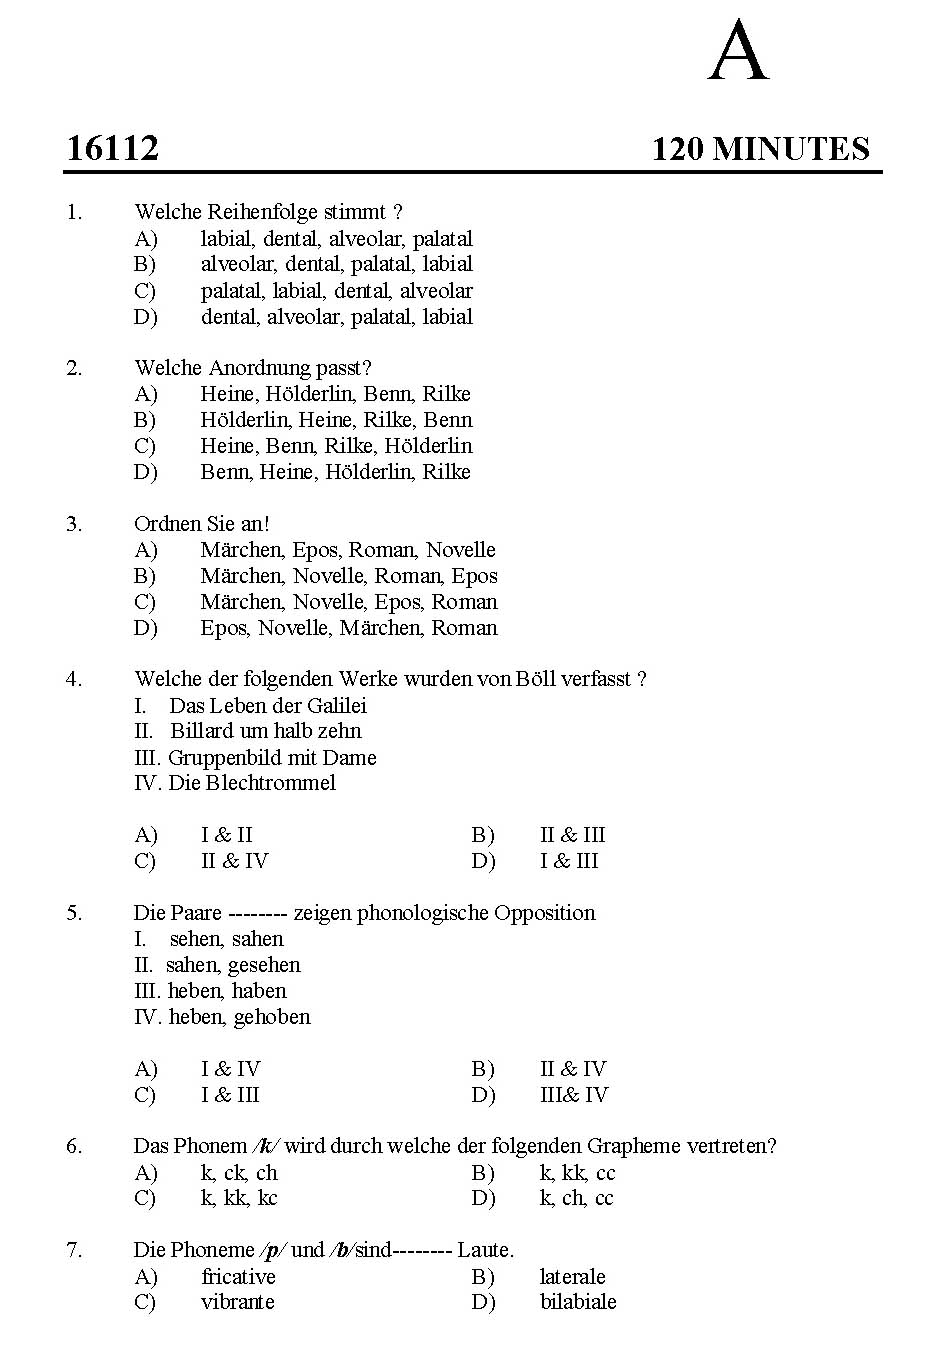 Kerala SET German Exam 2016 Question Code 16112 A 1